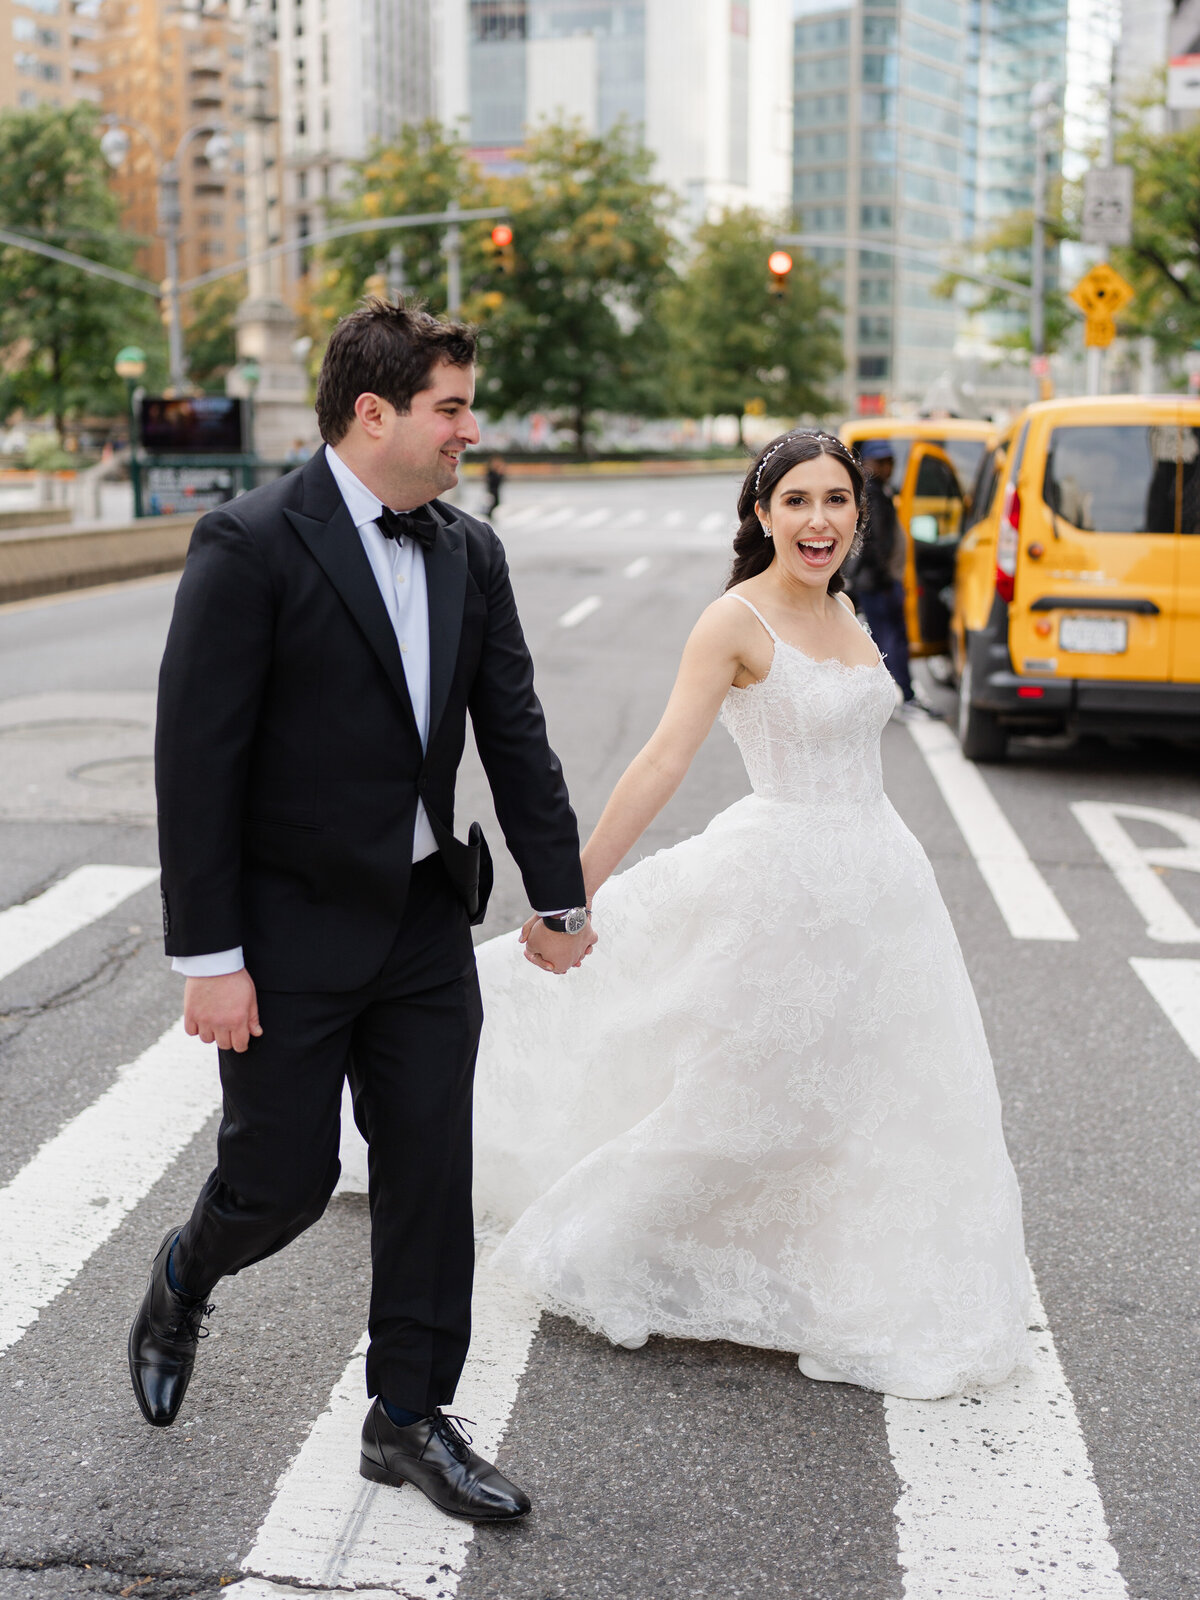 mandarinorientalwedding-newyorkwedding-nycwedding-luxurywedding-felixfeyginphotography-020